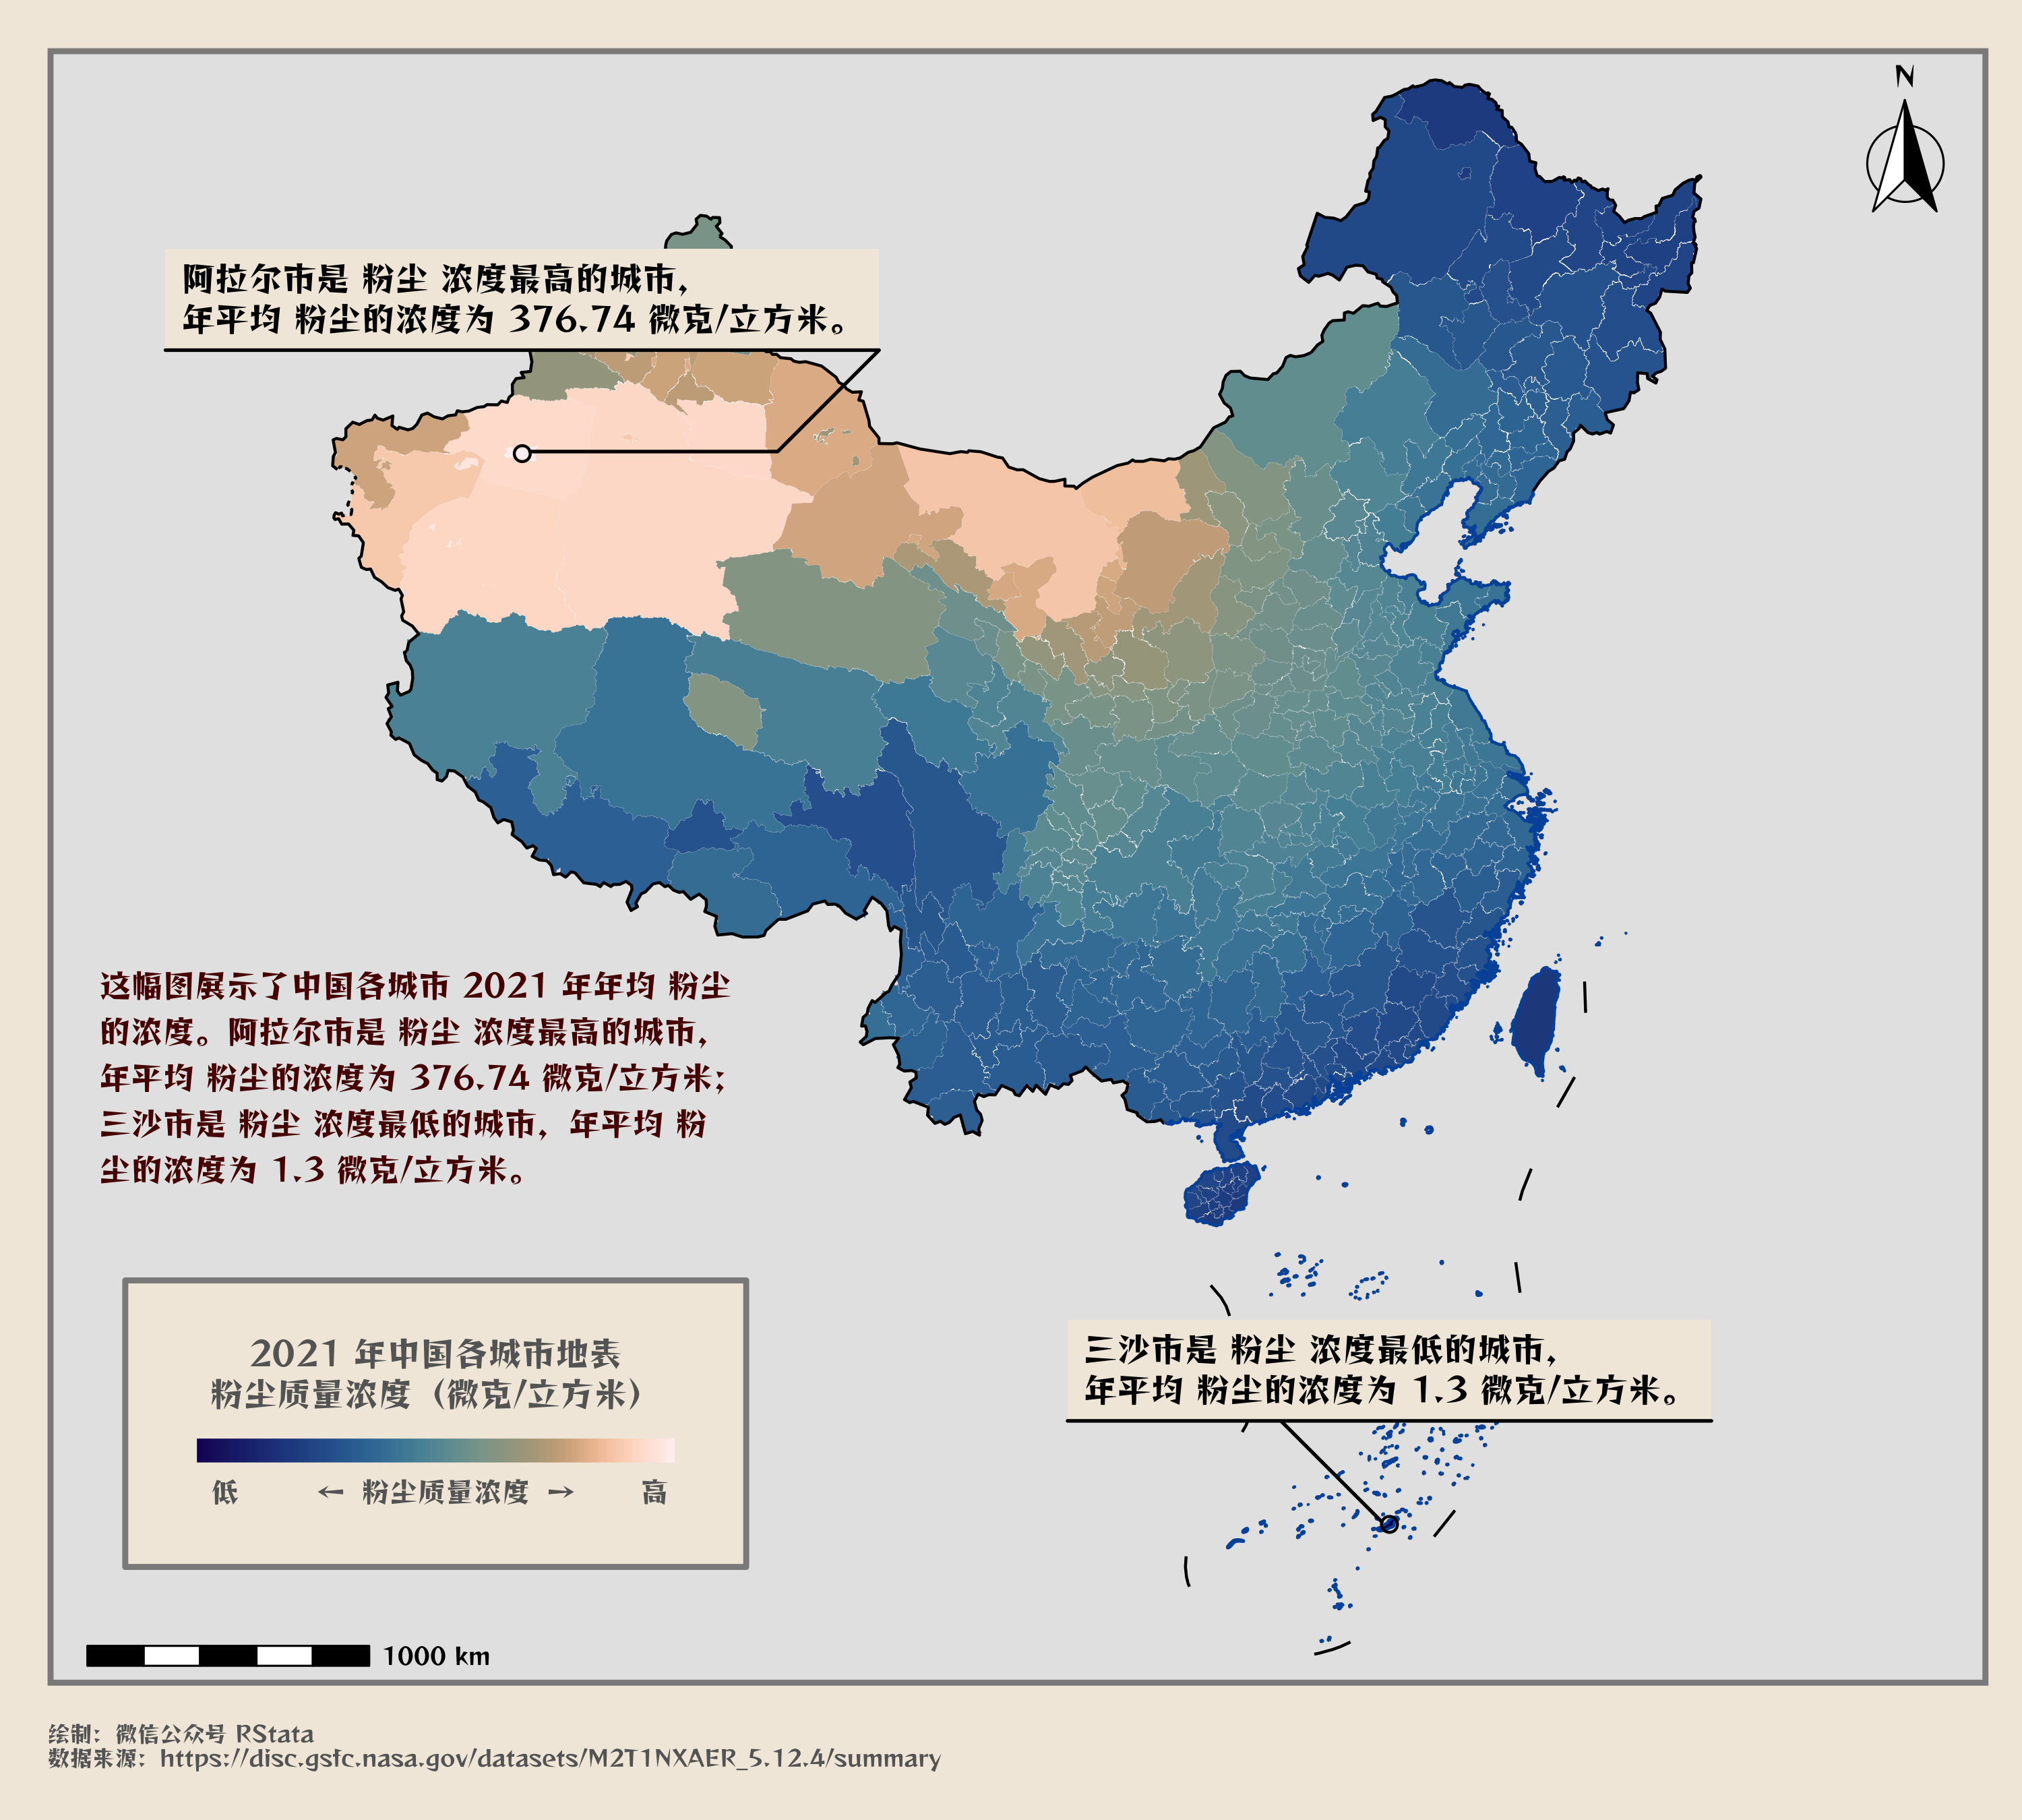 2021 年中国各市的年均粉尘浓度分布